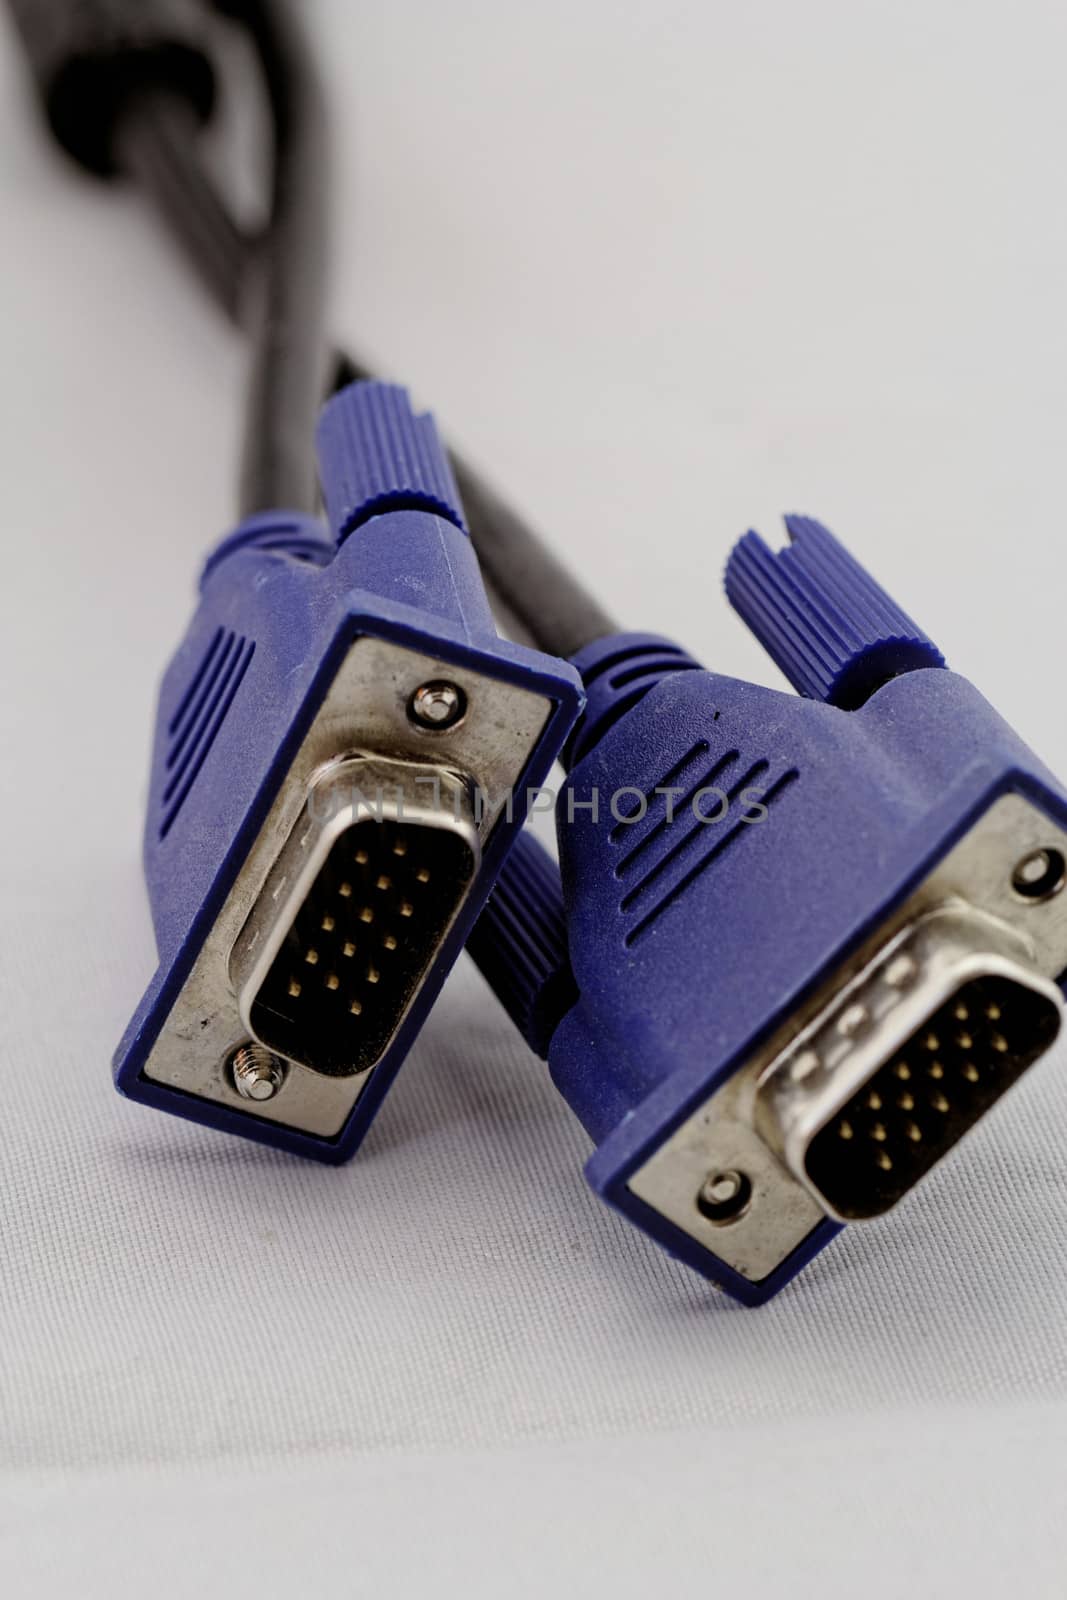 VGA Cable by NagyDodo